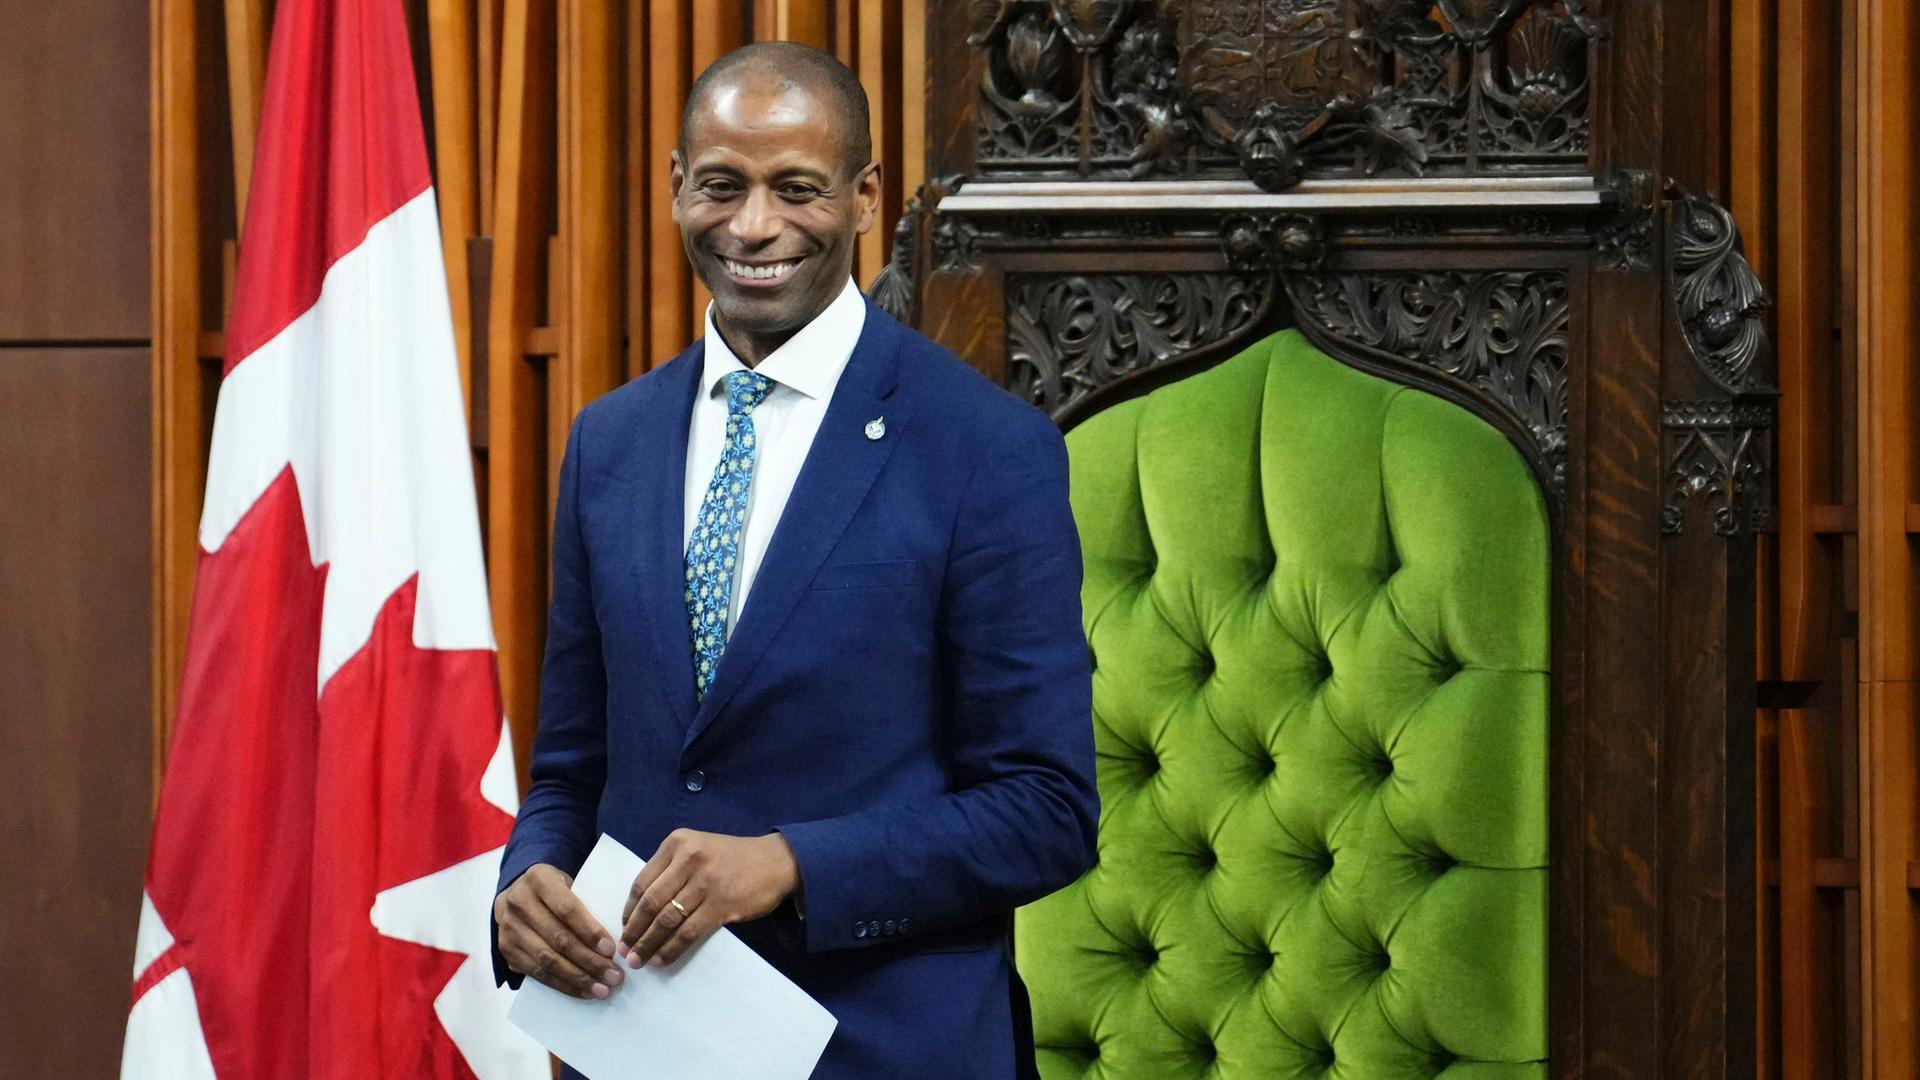 Kanada - Unterhaus wählt neuen Parlamentspräsidenten - erstmals schwarzer Politiker im Amt